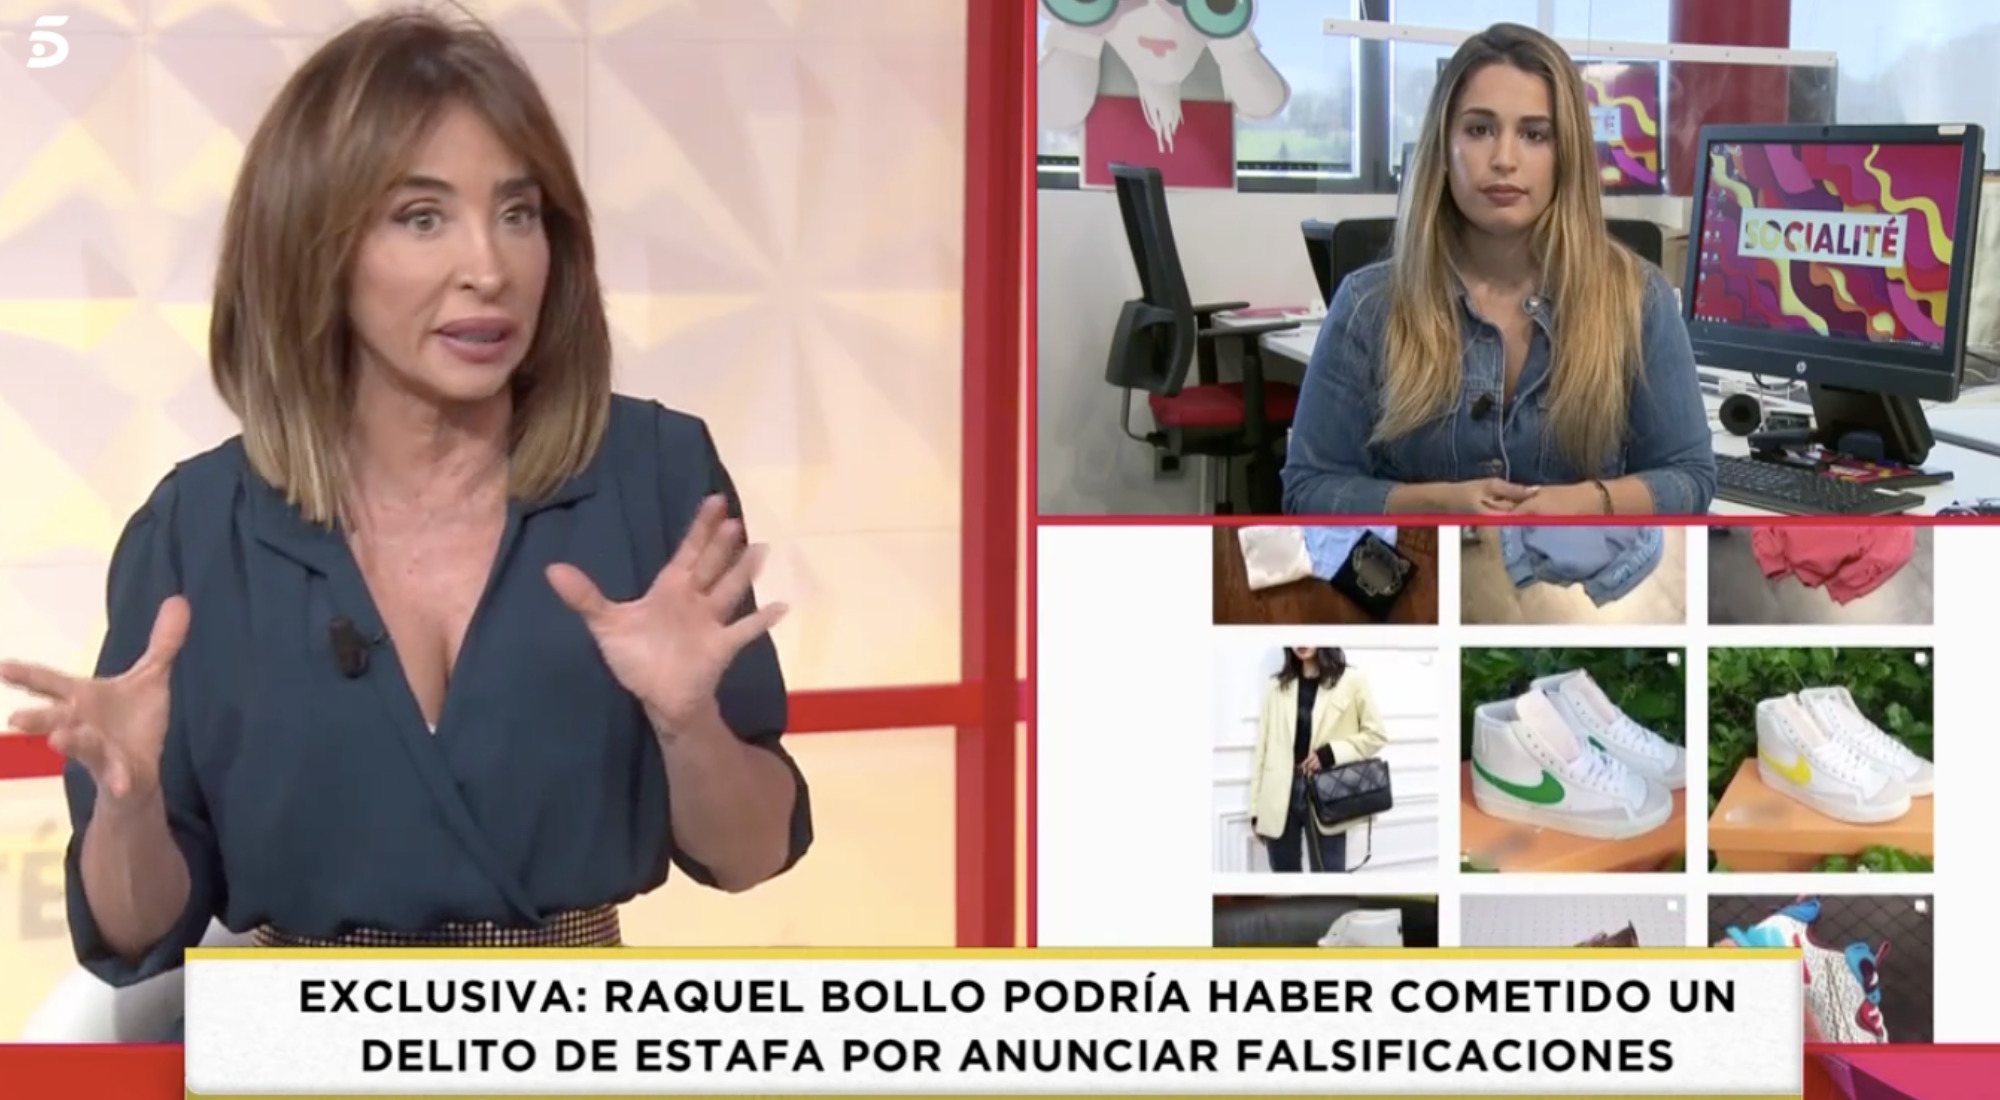 María Patiño anunciando la exclusiva en 'Socialité'